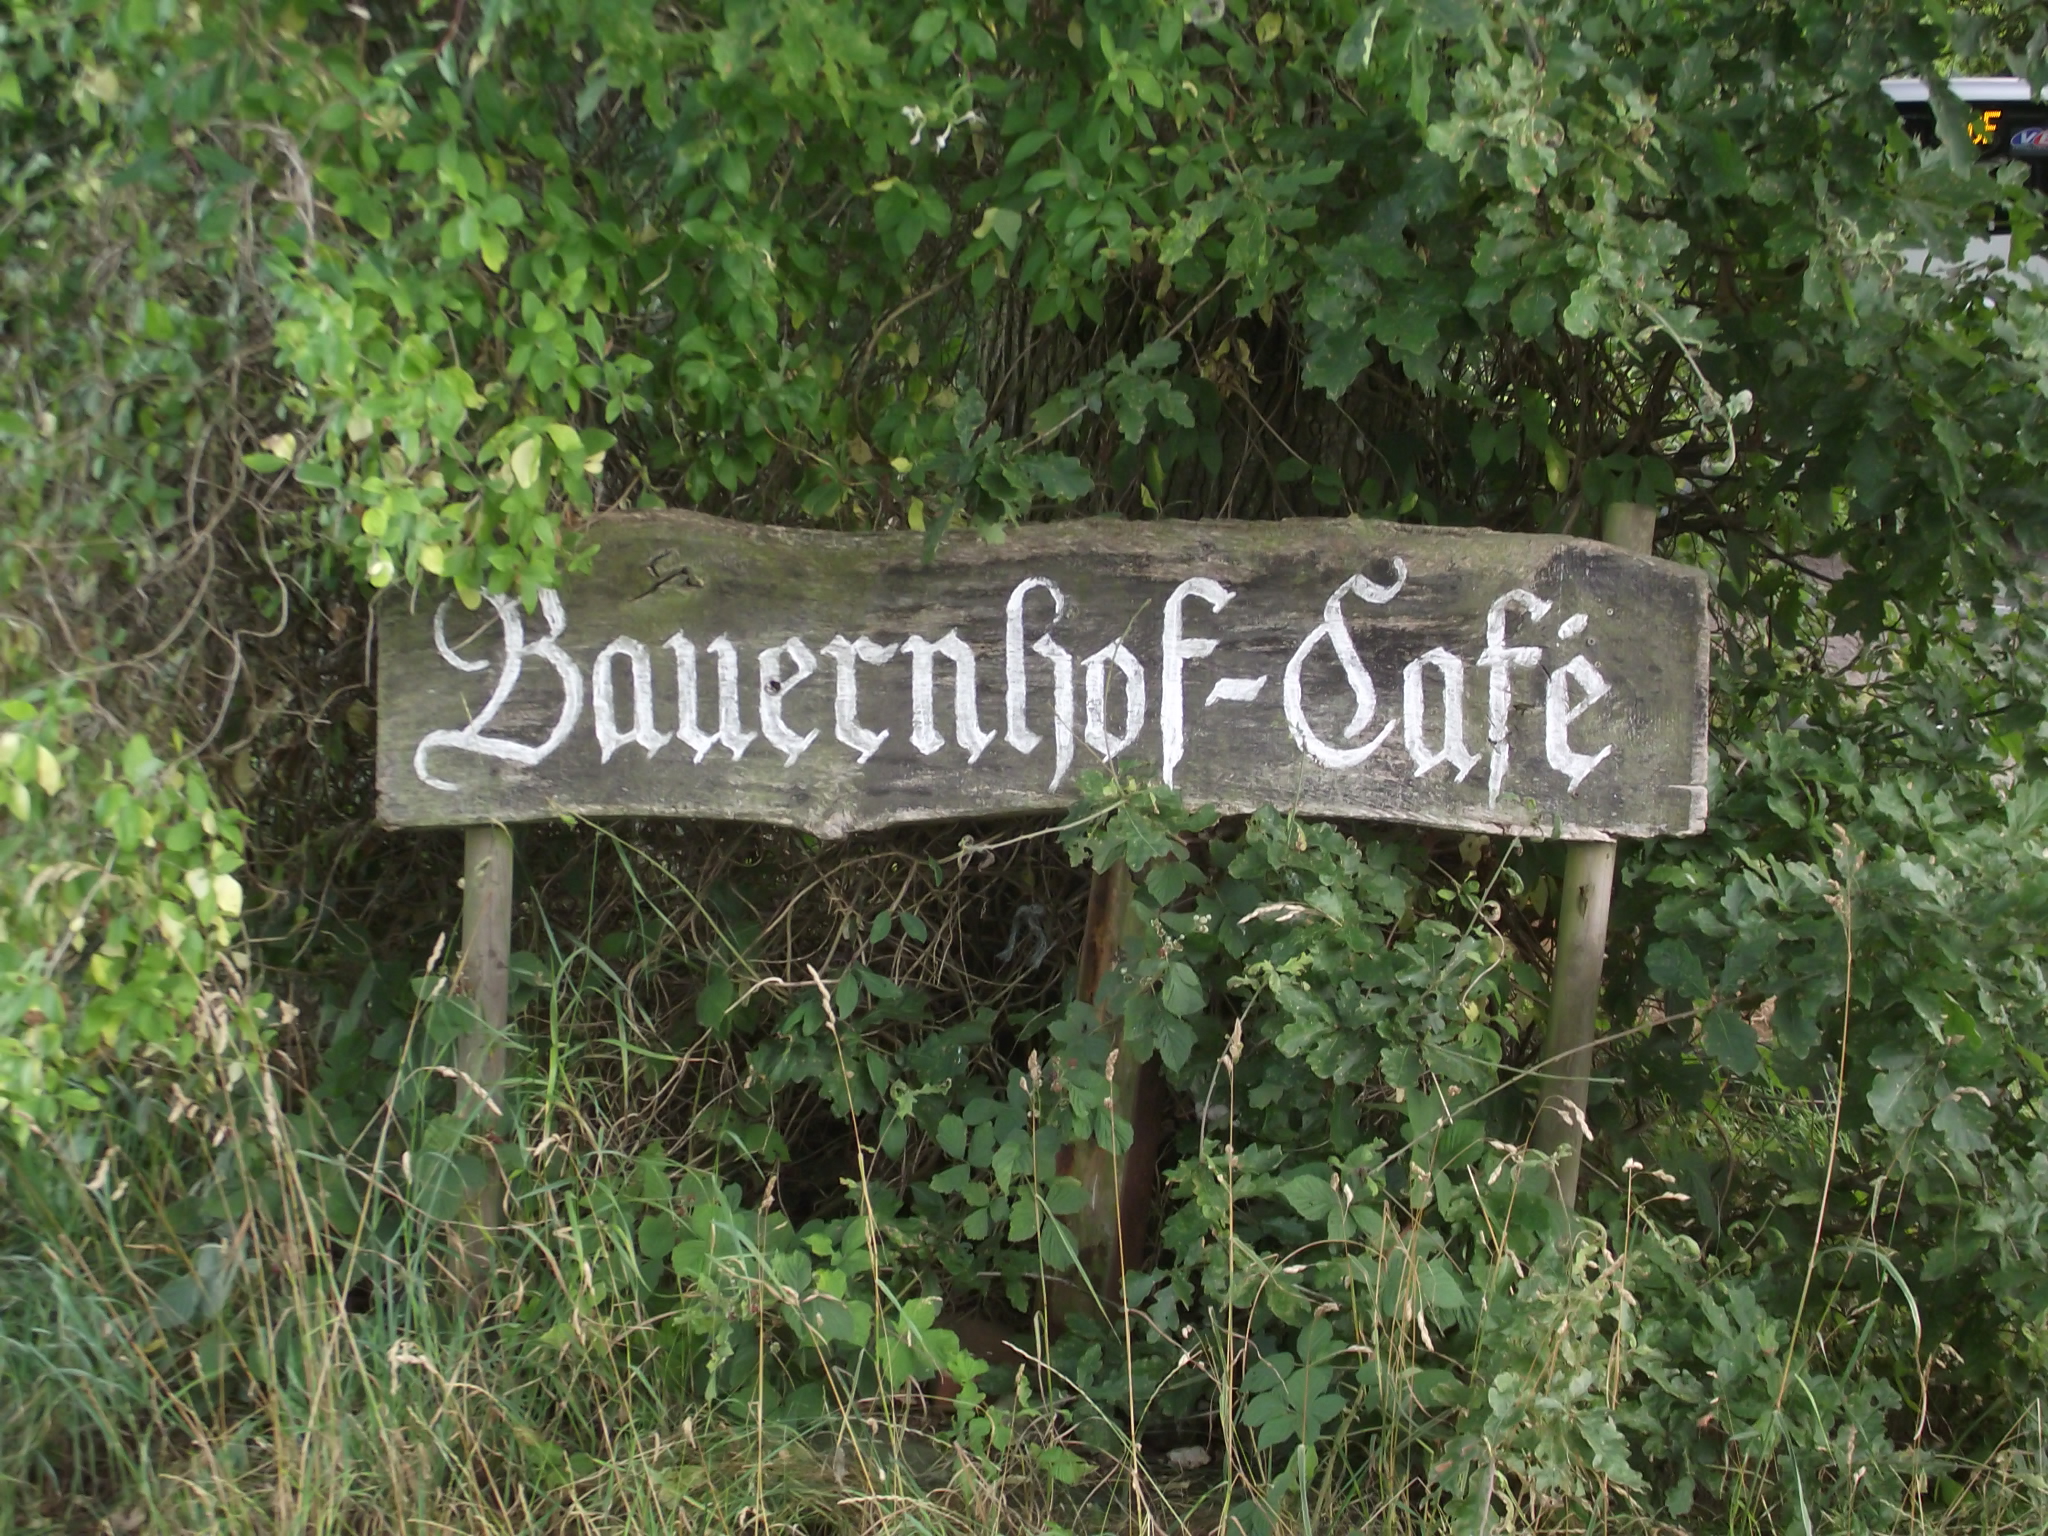 Bauernhof-Café Janßen